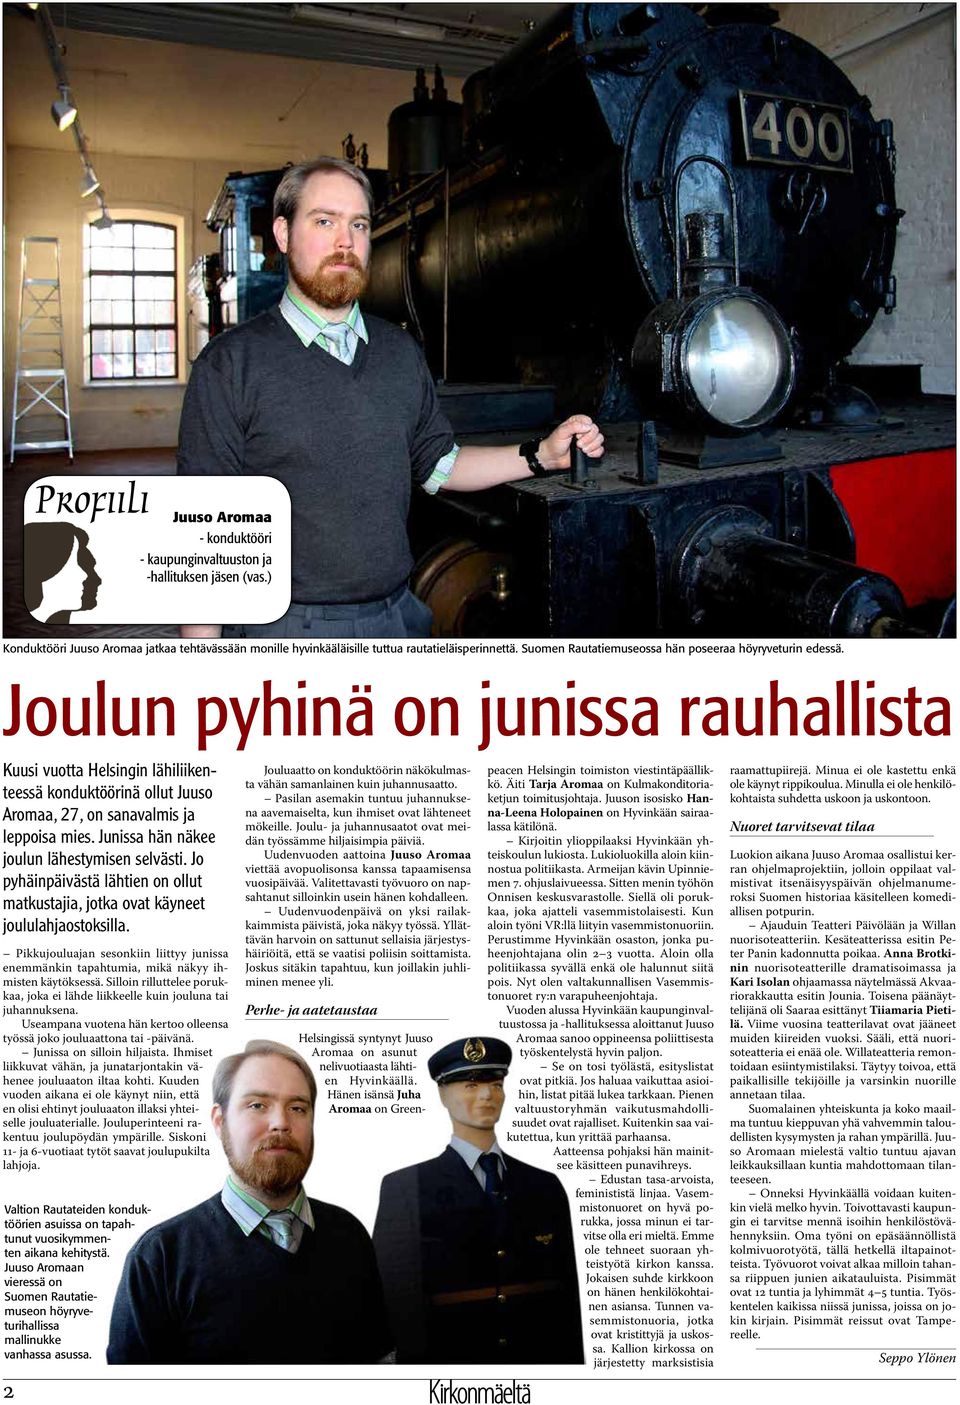 Joulun pyhinä on junissa rauhallista Kuusi vuotta Helsingin lähiliikenteessä konduktöörinä ollut Juuso Aromaa, 27, on sanavalmis ja leppoisa mies. Junissa hän näkee joulun lähestymisen selvästi.